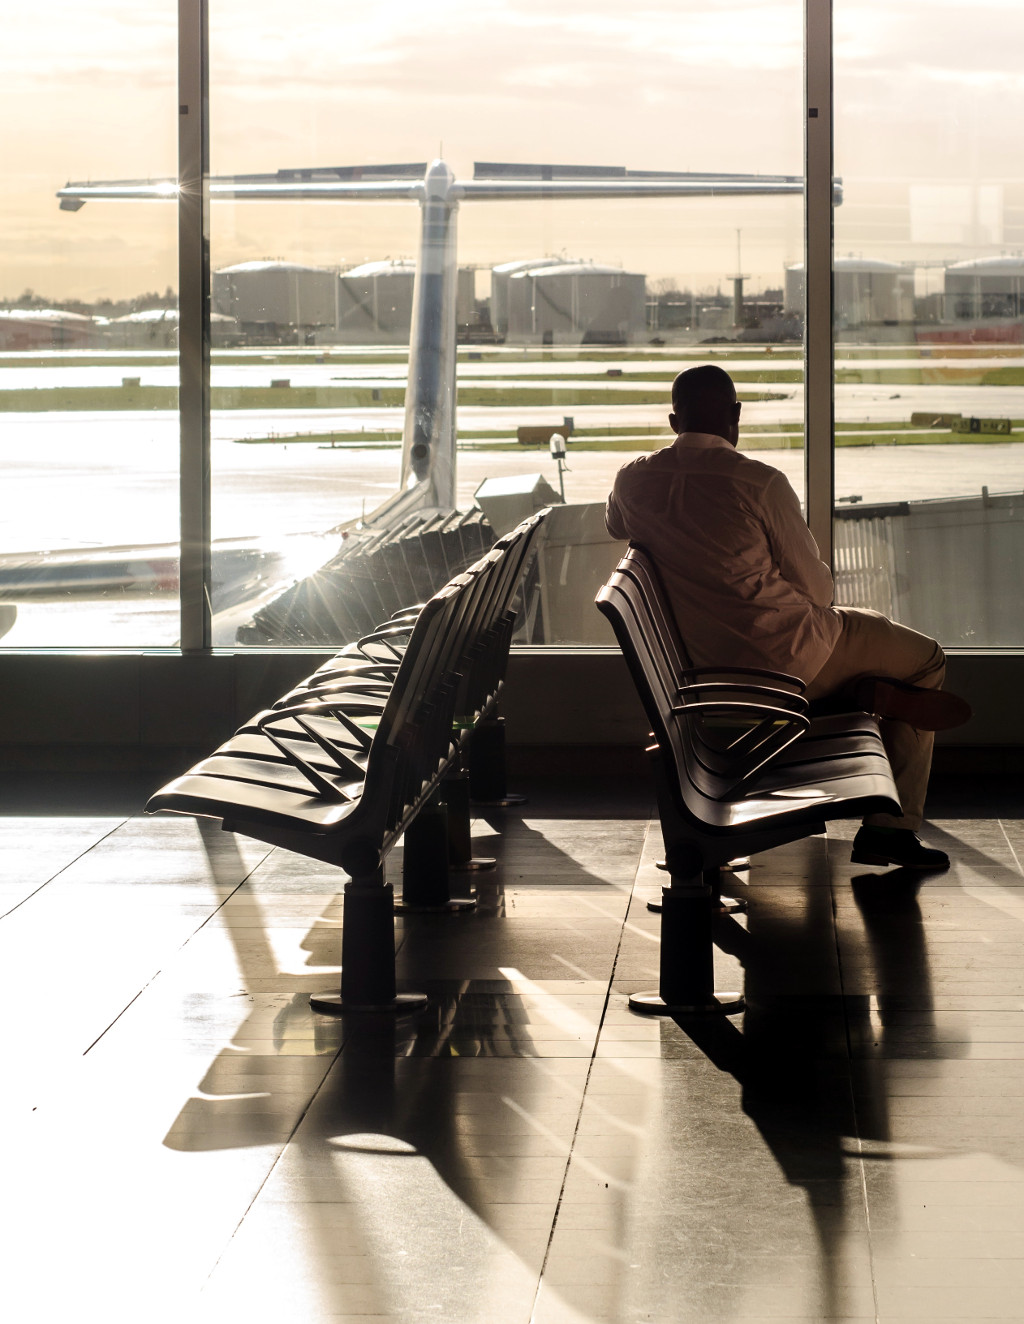 Hombre en sala de espera como imagen asociada a nuevas reglas para viajar en avión